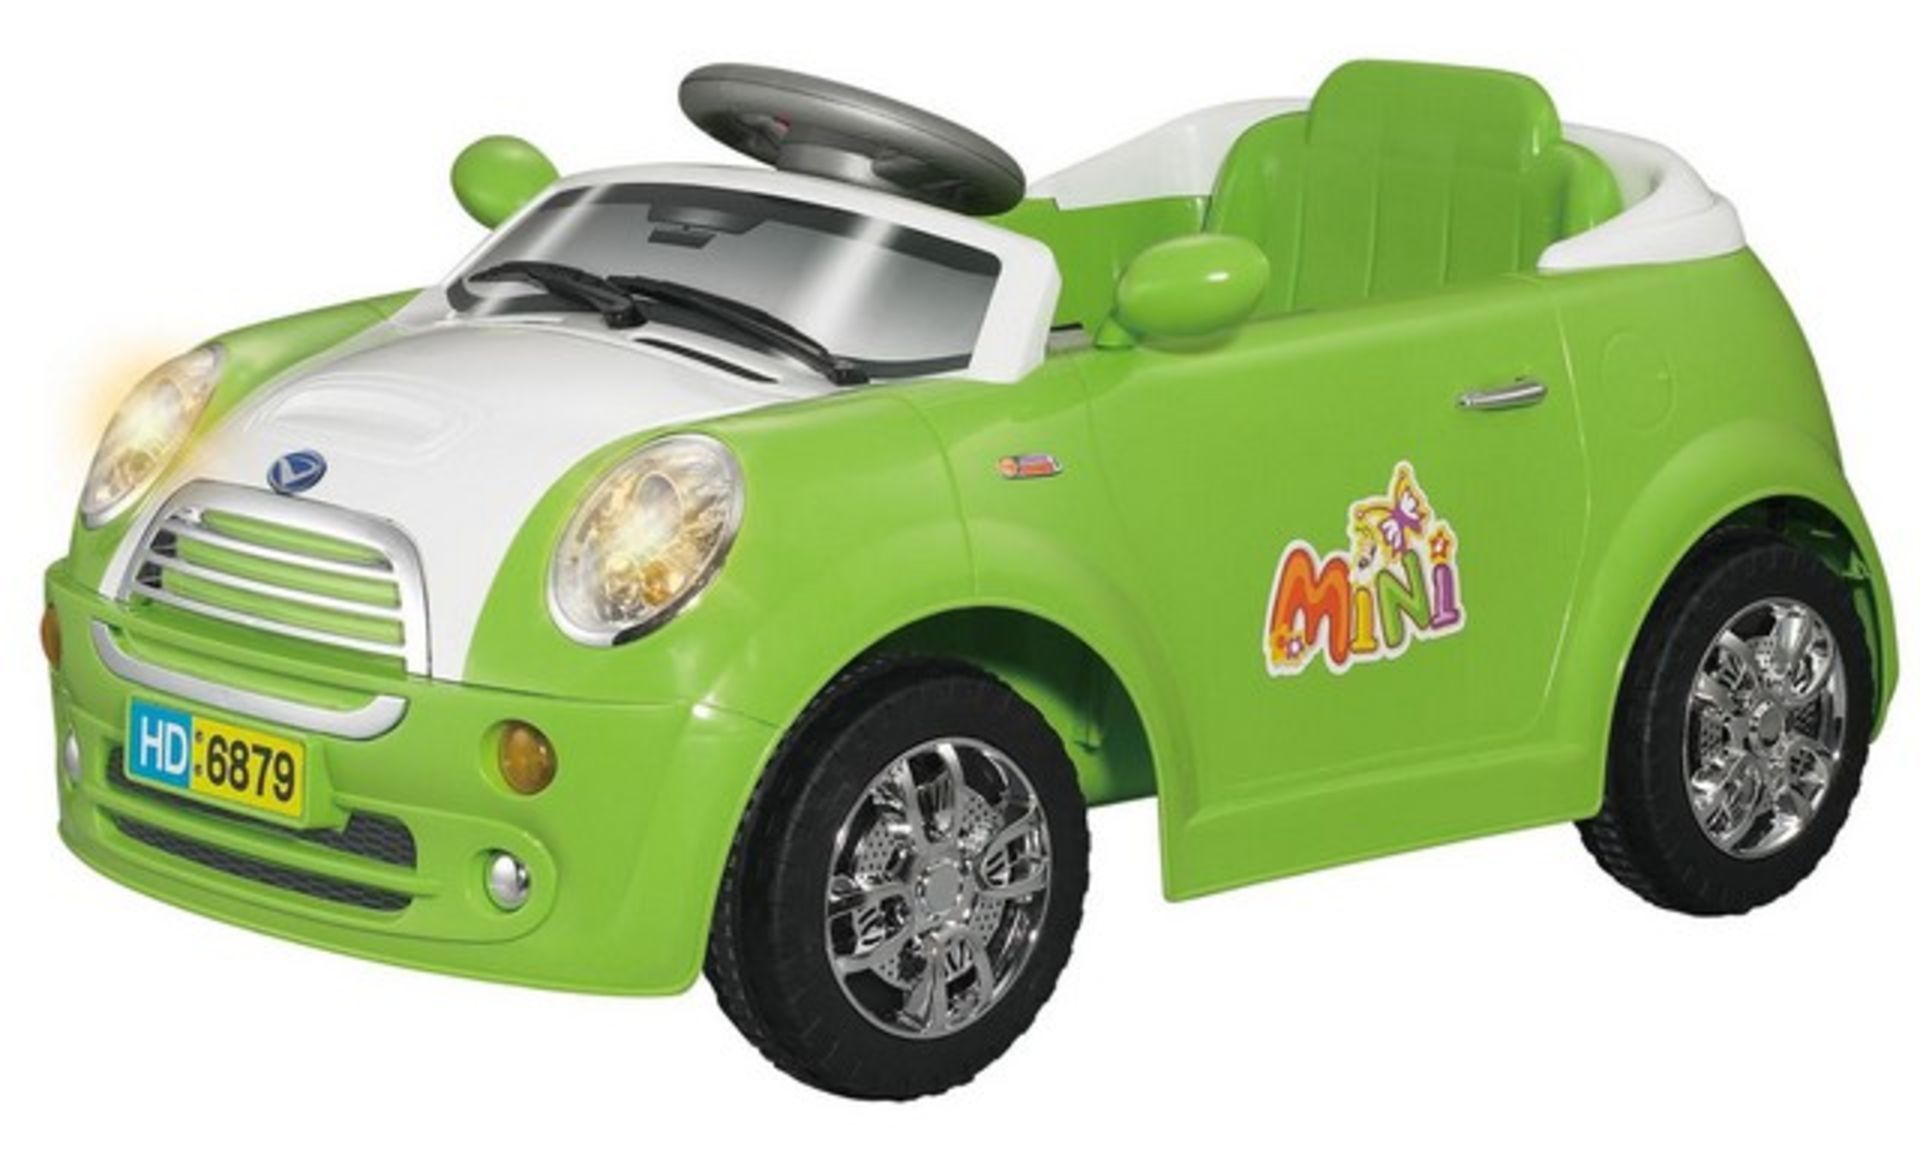 V Brand New Mini Cooper Style 6v Childrens Ride on Car - Green